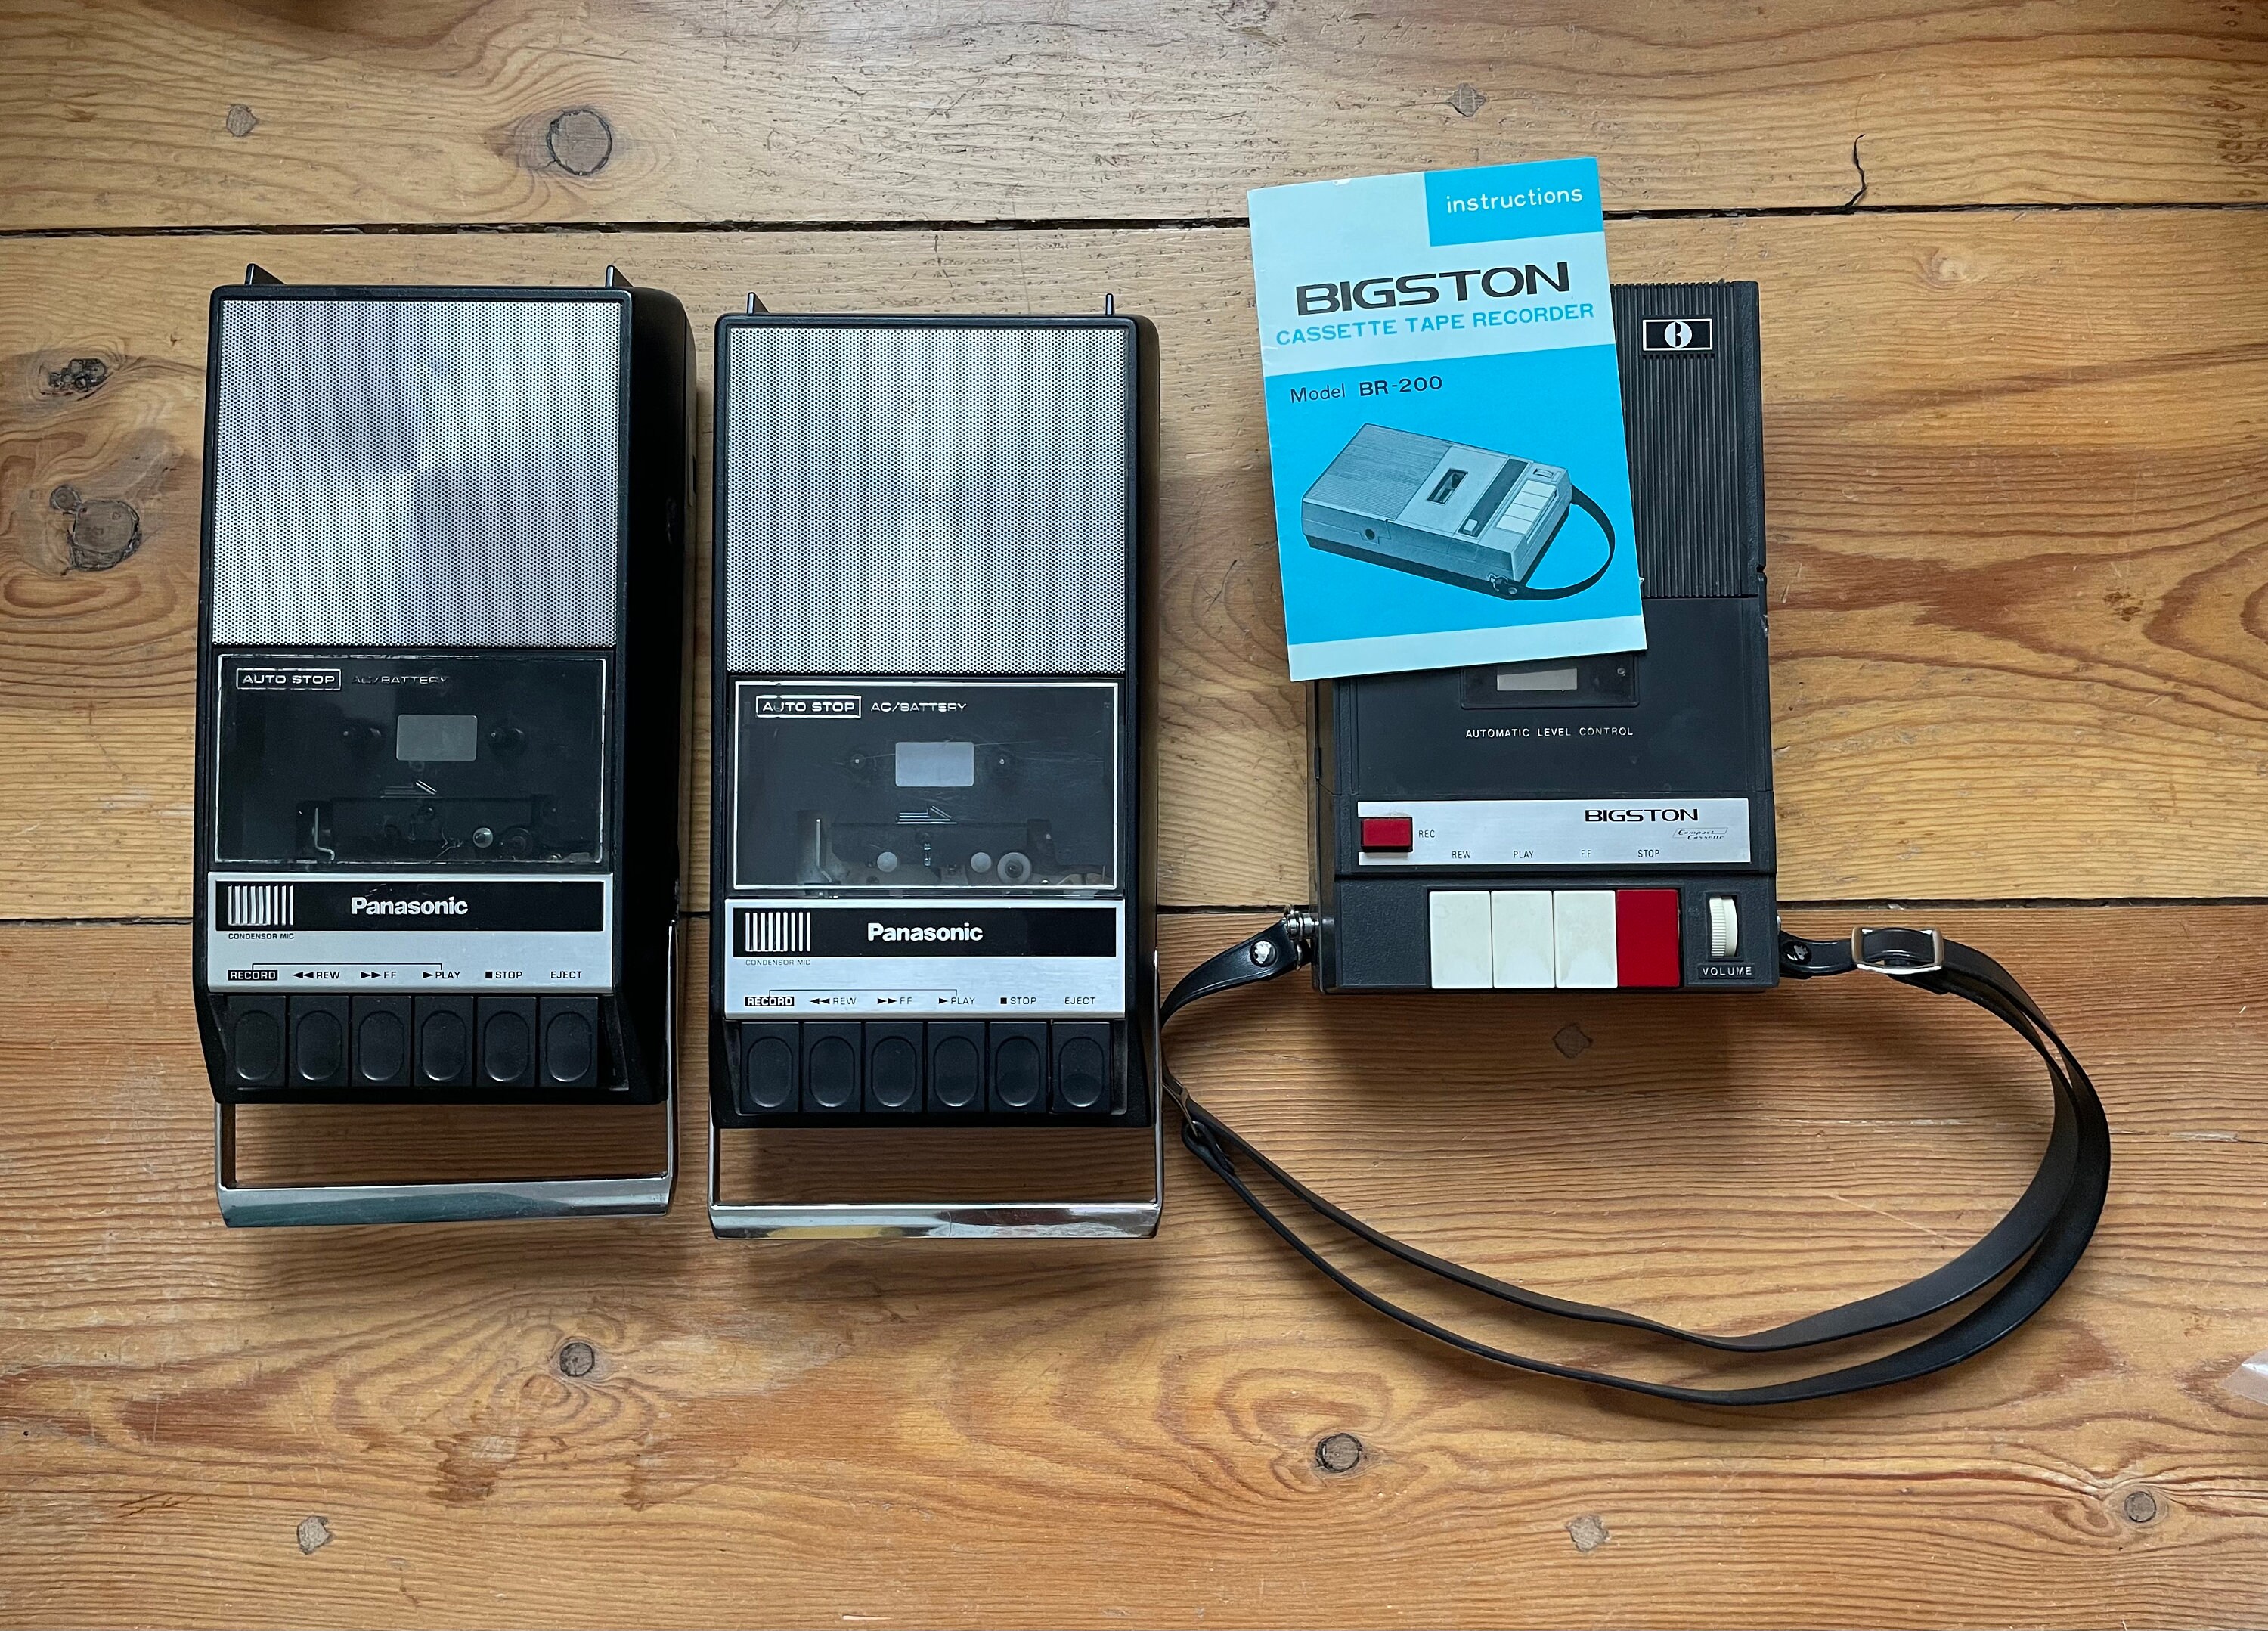 Reparación de pletina cassette Sony Repair cassette deck Sony, By La Casa  Electrónica